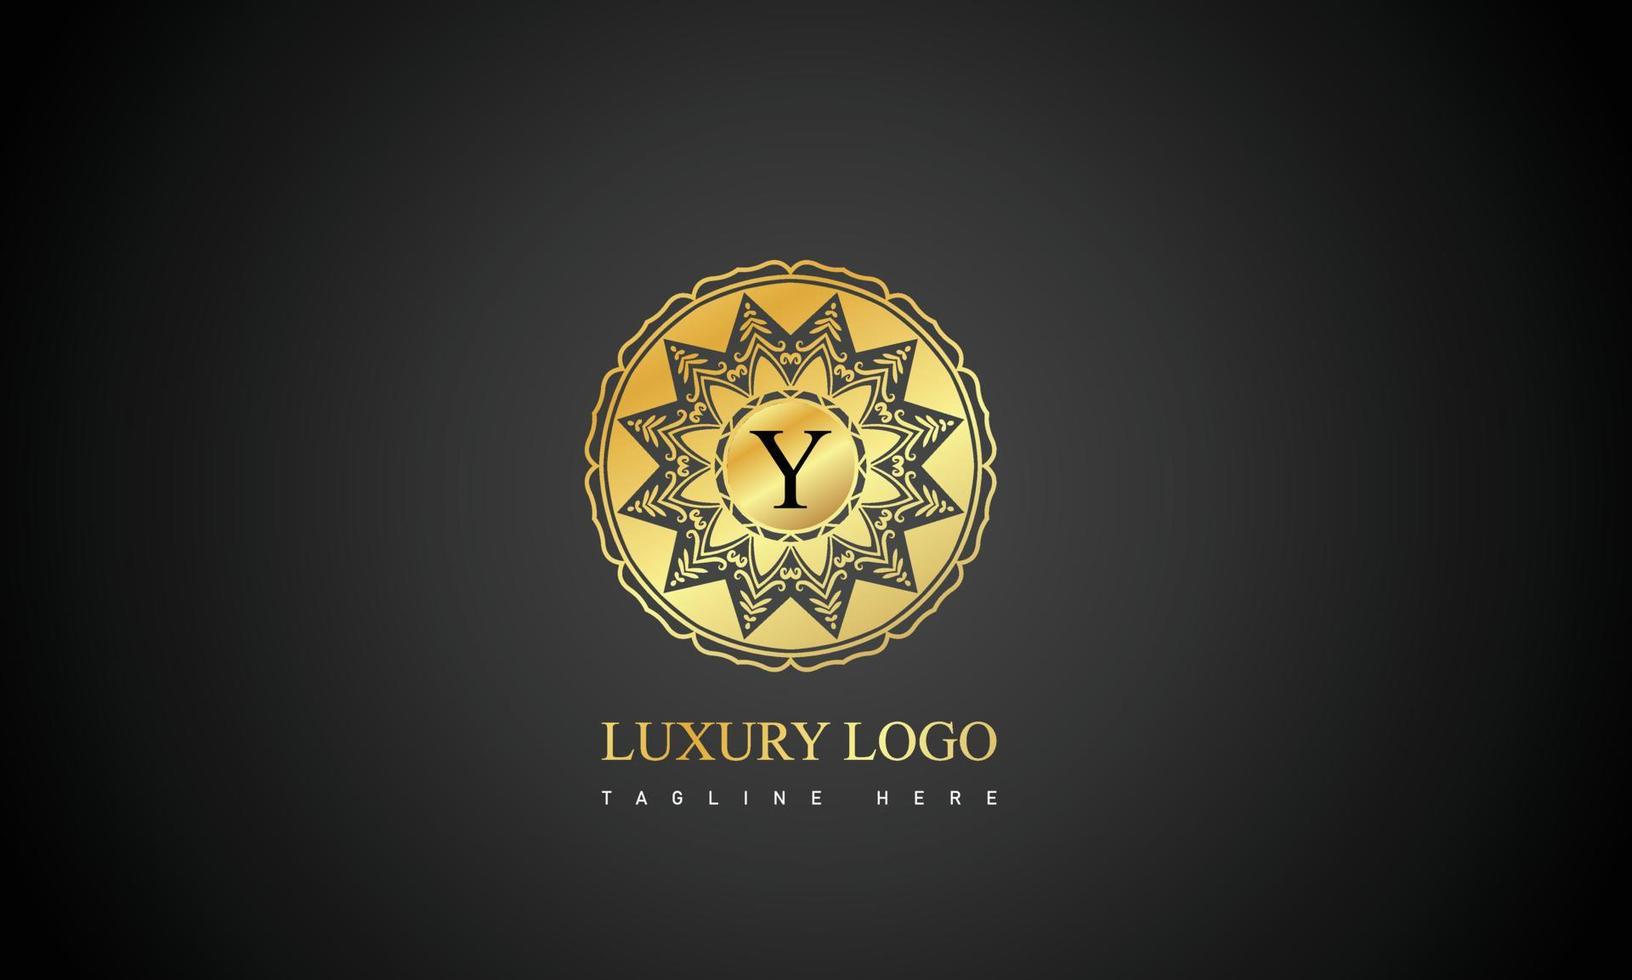 moderno lujo letra logo para elegante negocio y empresa vector